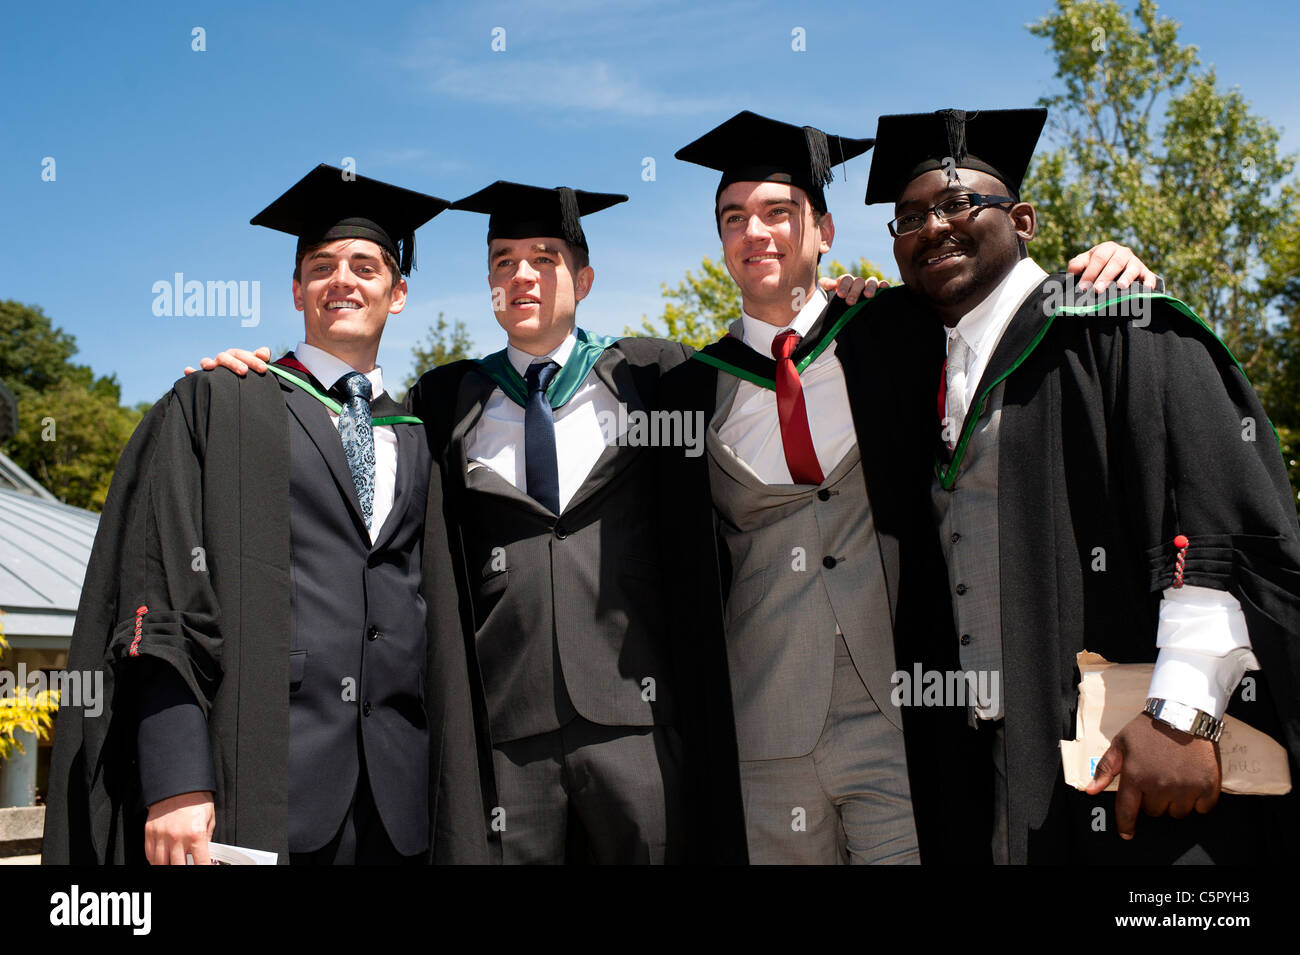 Quatre diplômés de l'université d'Aberystwyth le jour de la remise des diplômes, UK Banque D'Images